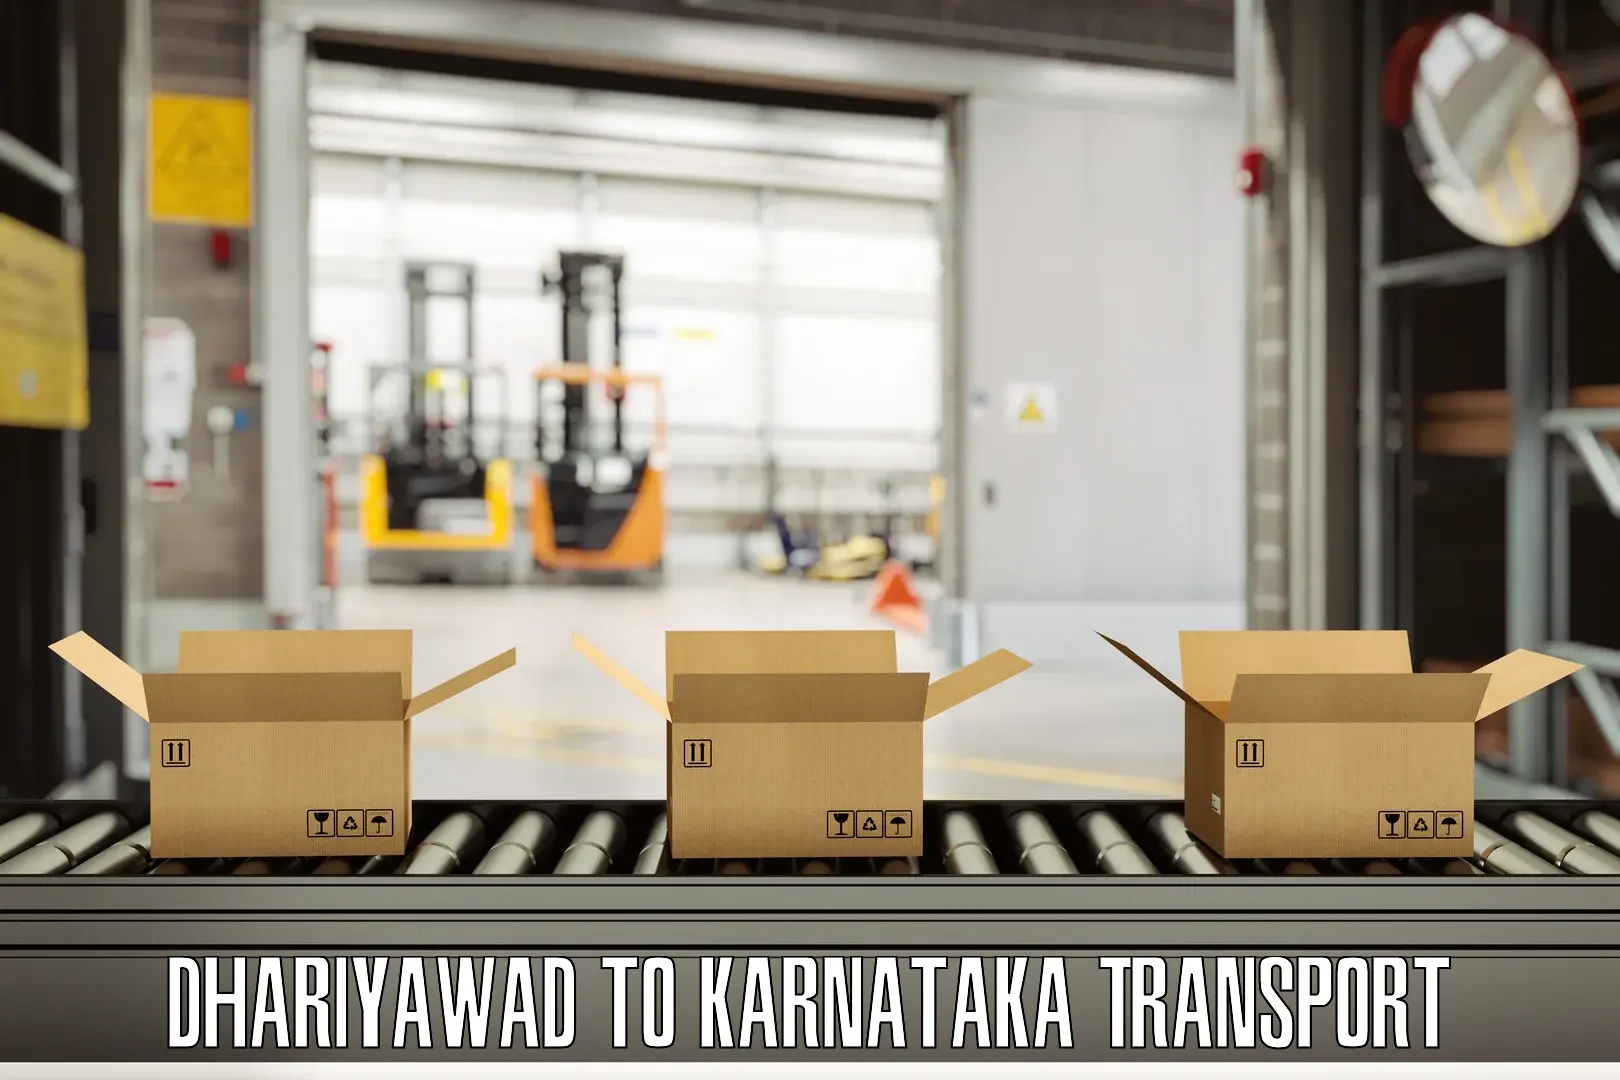 Cargo train transport services Dhariyawad to Kanjarakatte